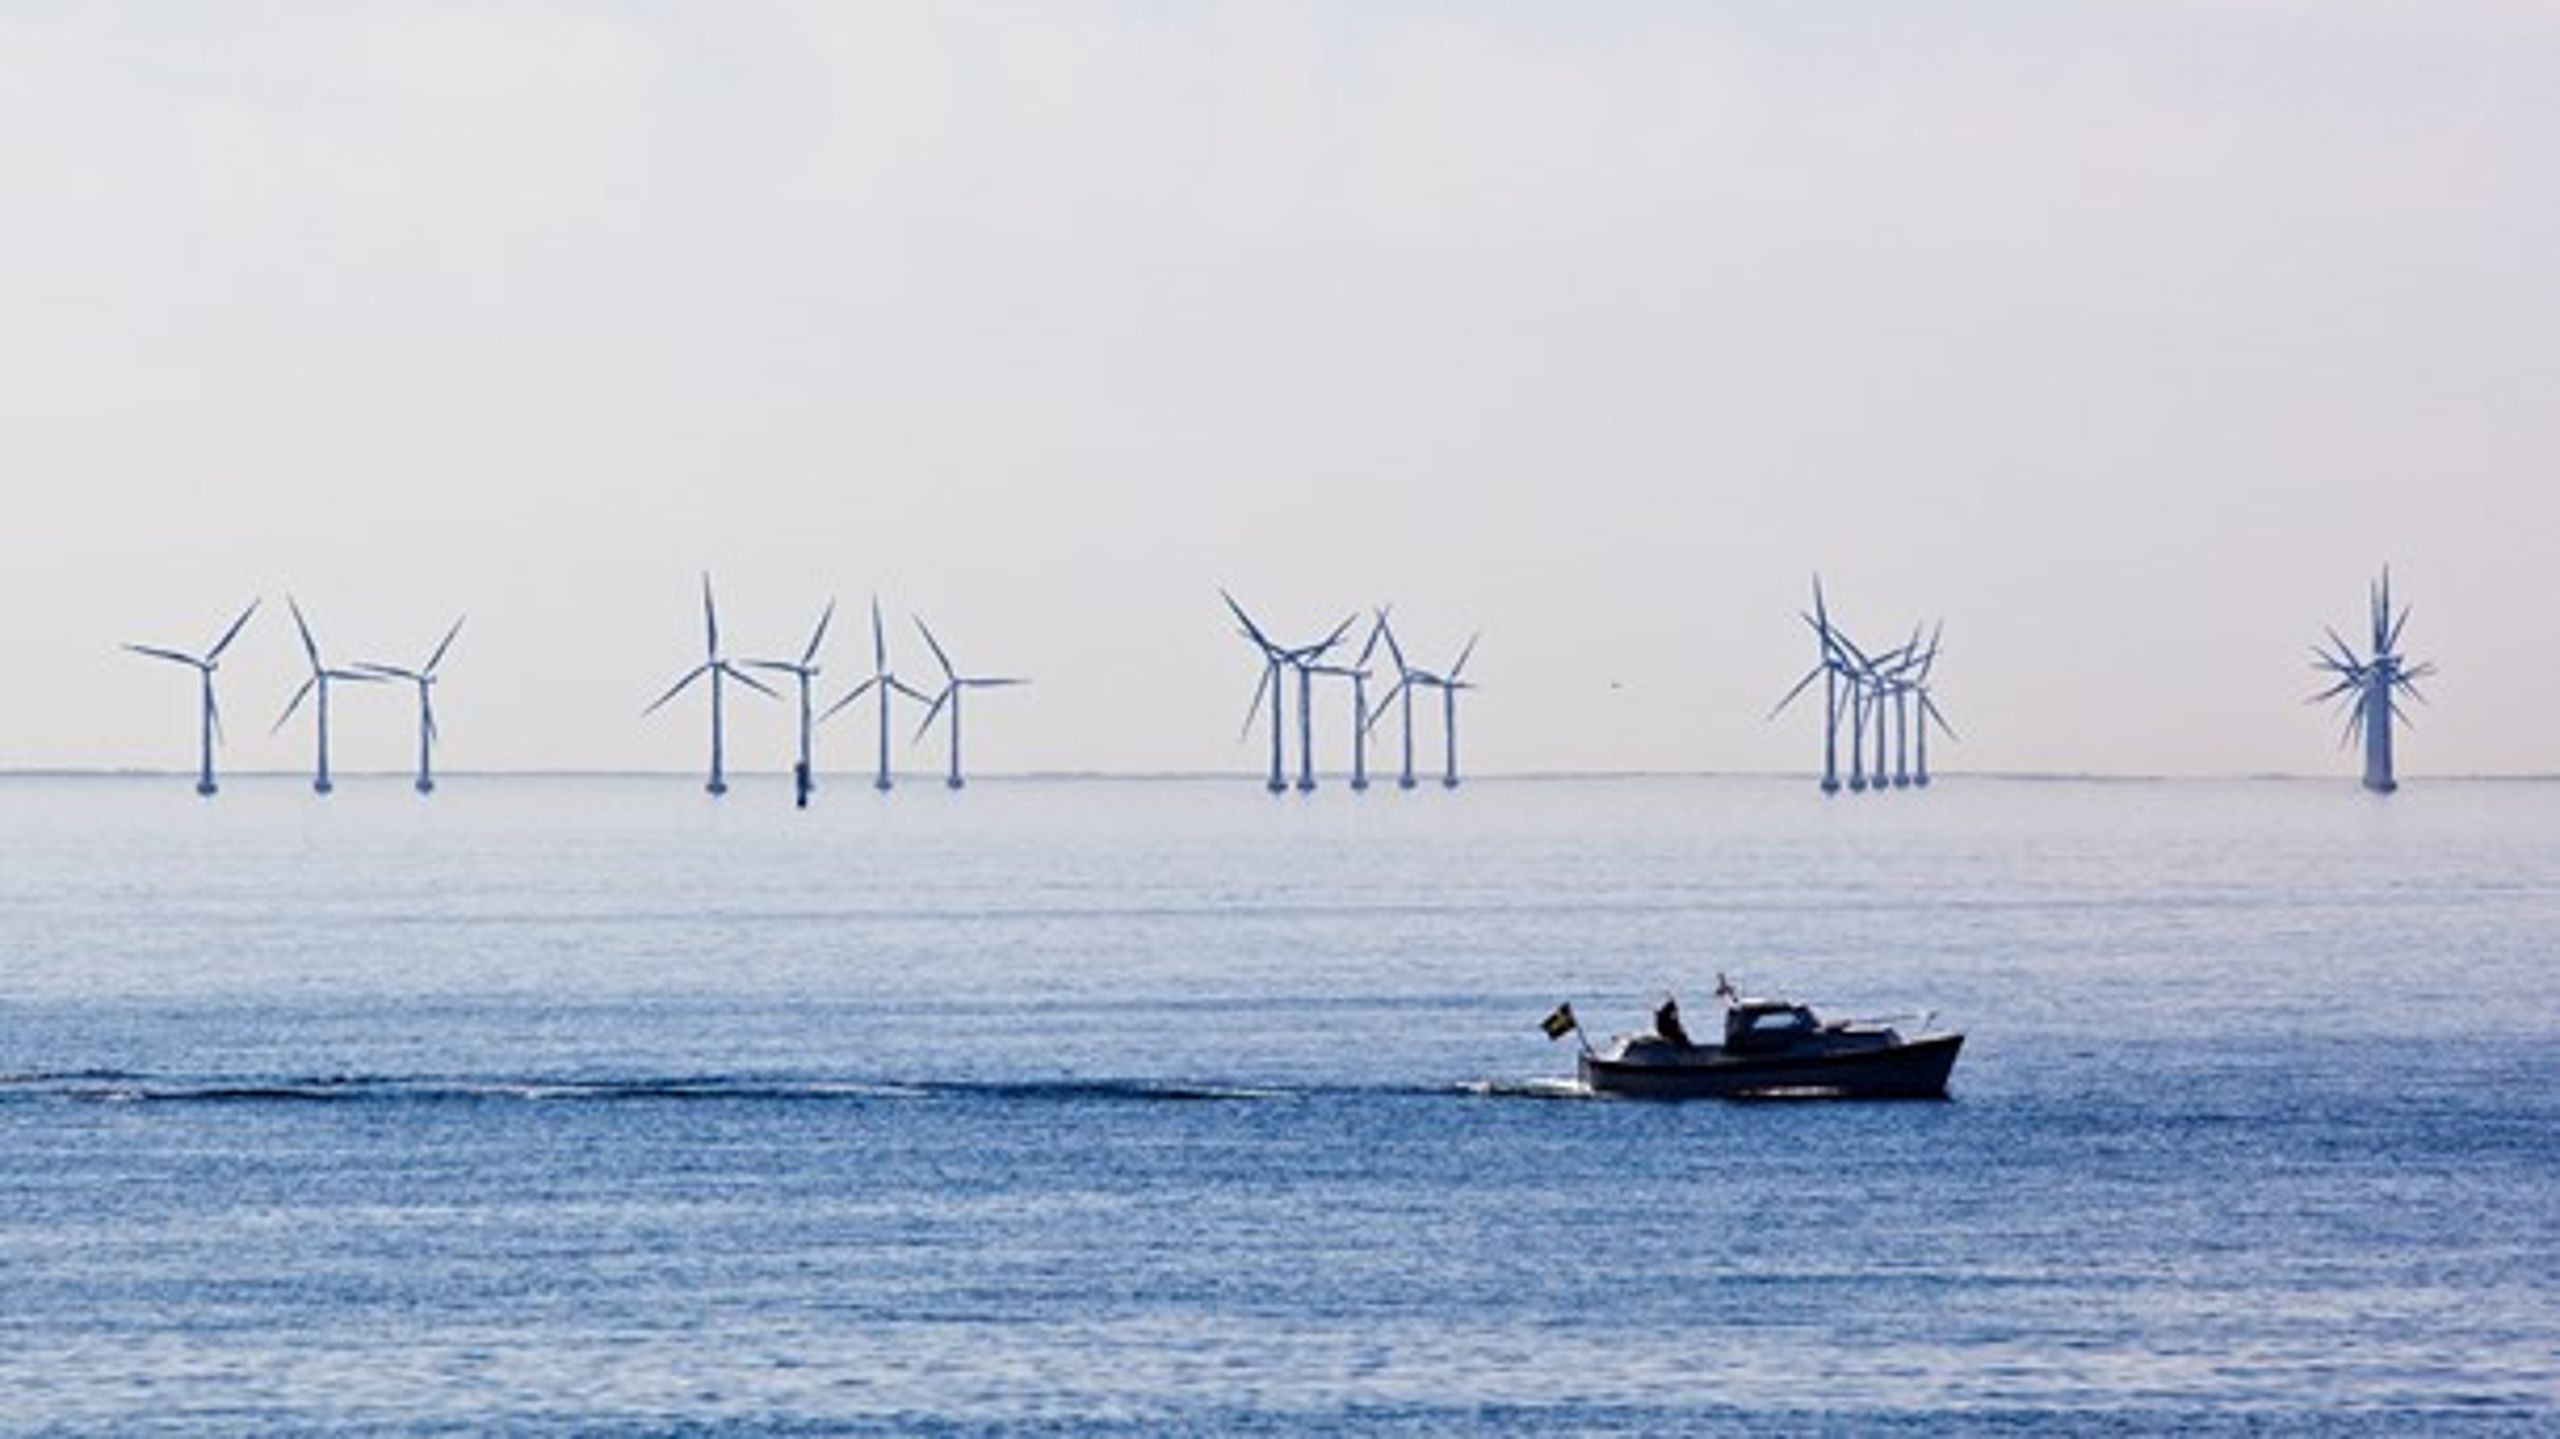 EU's CO2-kvotesystem har tabt pusten.&nbsp;Derfor har dansk udbygning med vedvarende energi en positiv effekt på klimaet, vurderer Klimarådet i ny analyse.